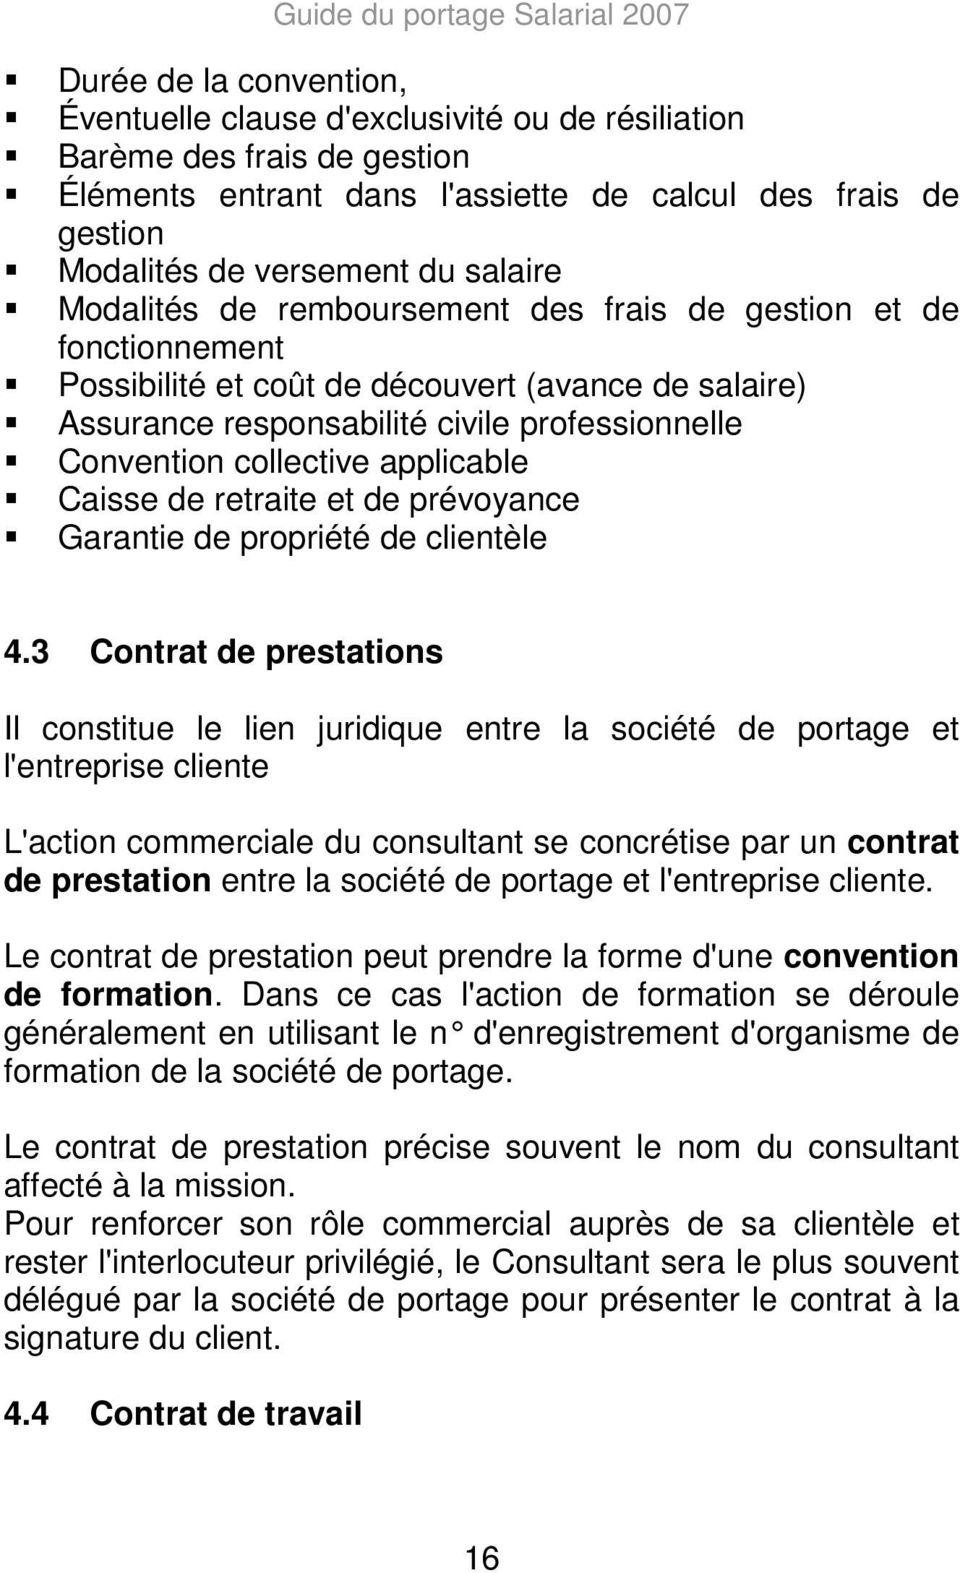 professionnelle Convention collective applicable Caisse de retraite et de prévoyance Garantie de propriété de clientèle 4.